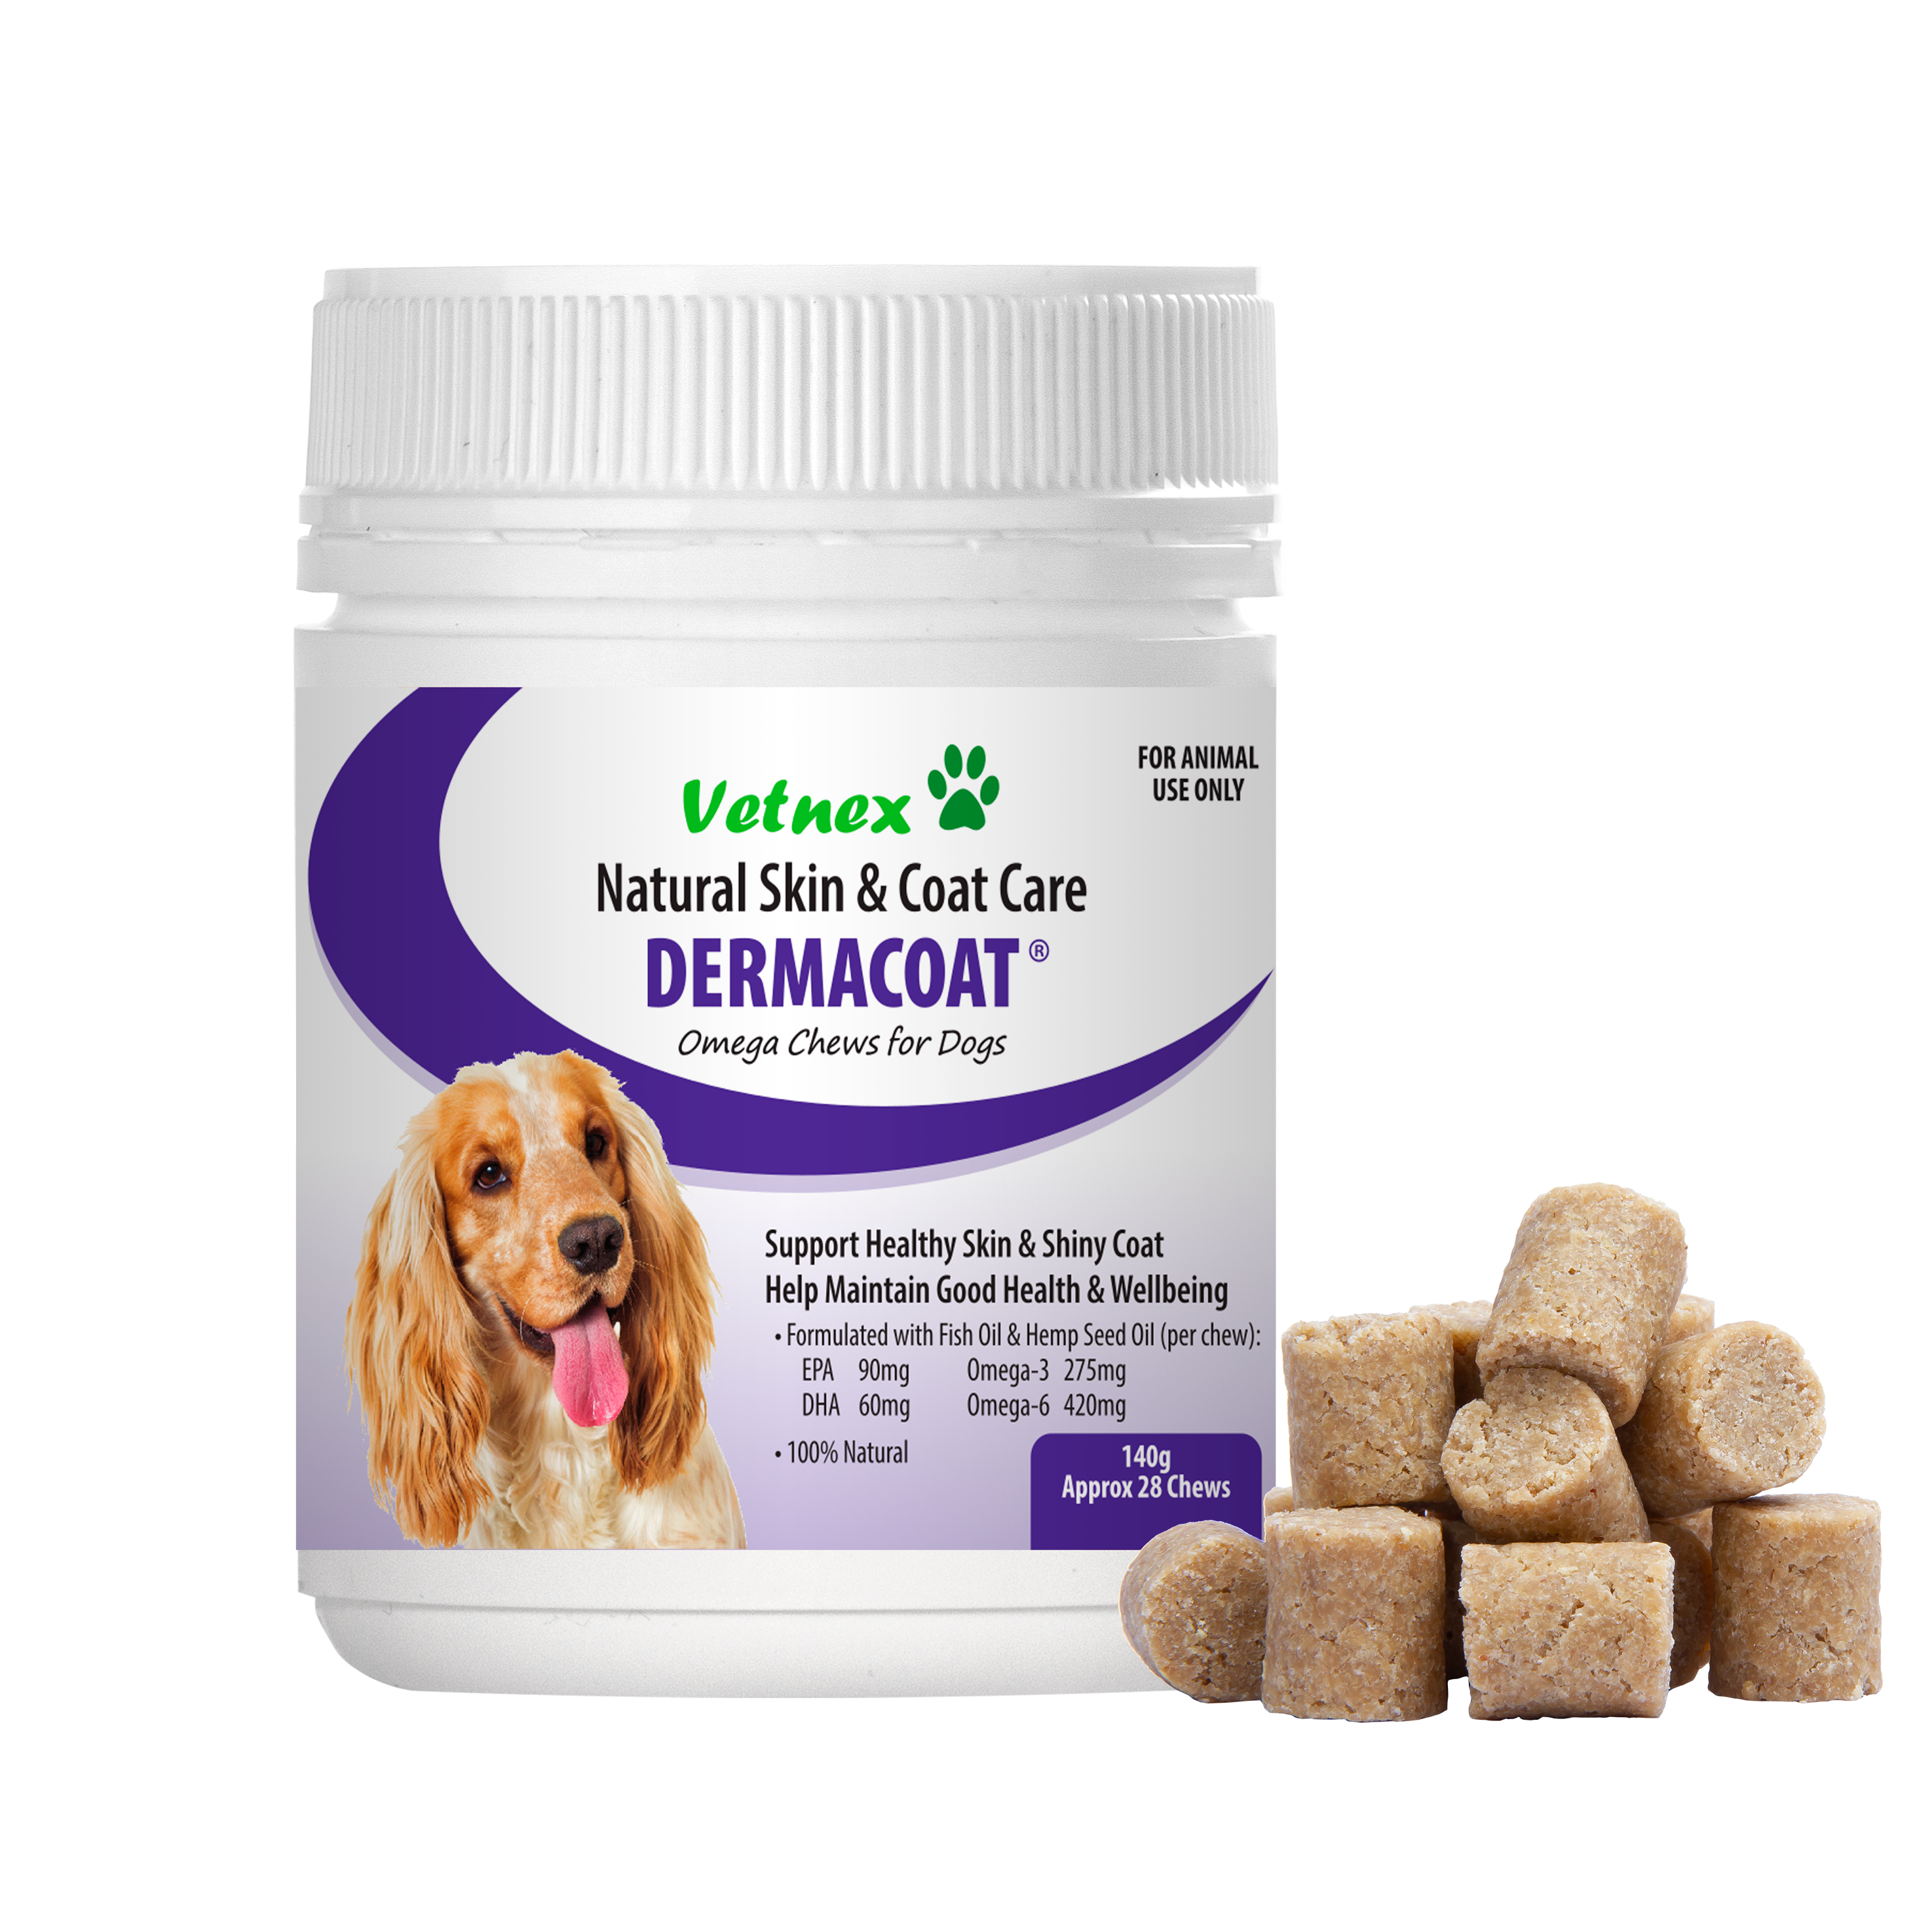 Vetnex DermaCoat Omega Chews for Dogs 140g/28 chews